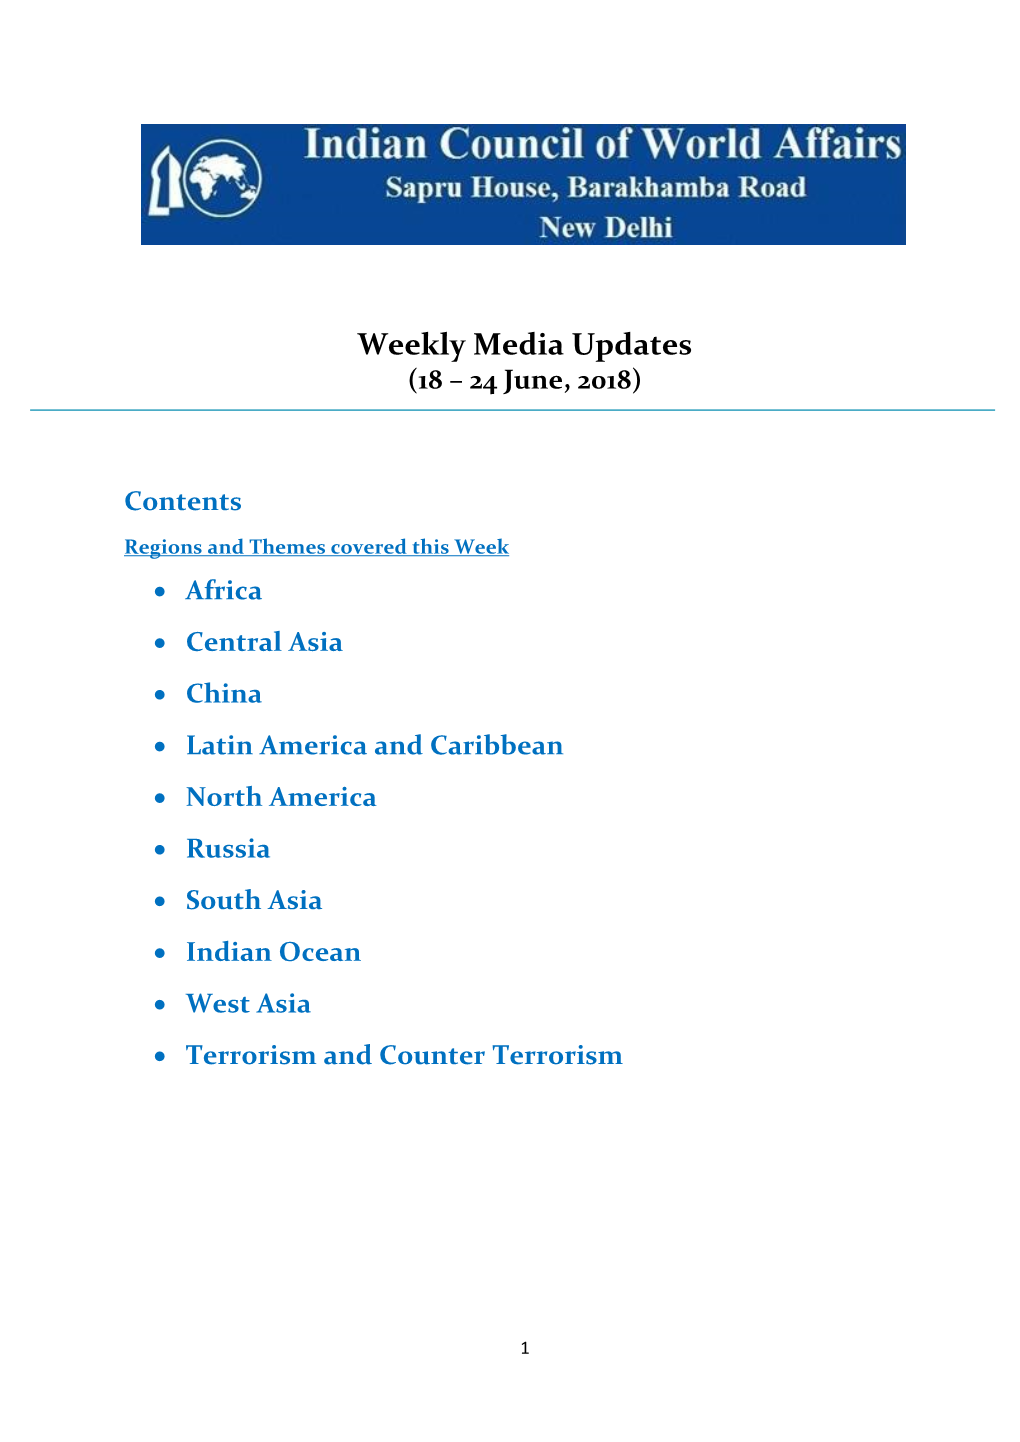 Weekly Media Updates (18 – 24 June, 2018)